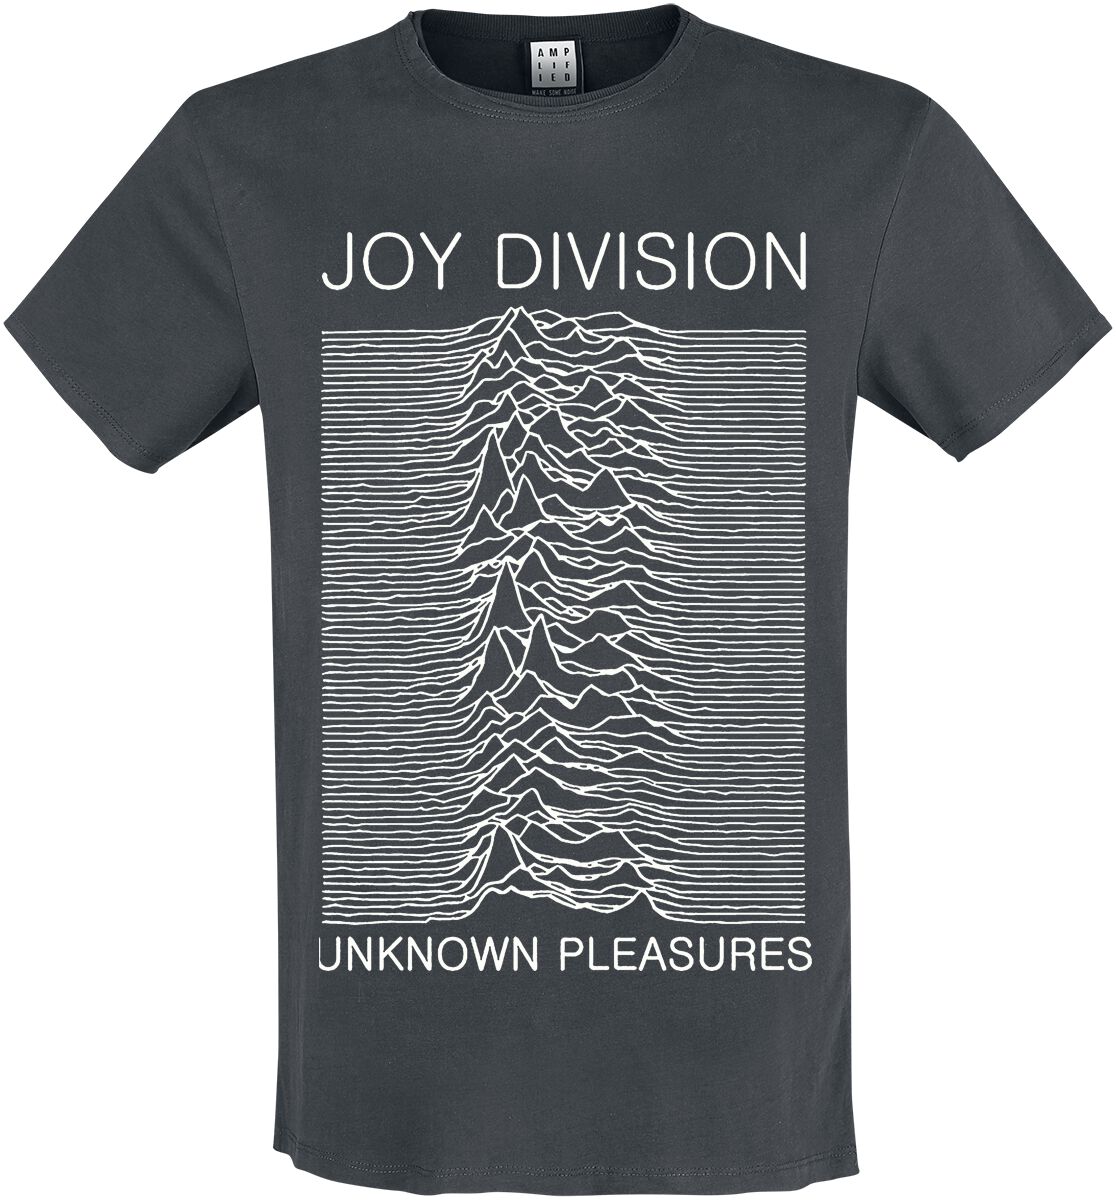 Joy Division T-Shirt - Amplified Collection - Unknown Pleasures - S bis 3XL - für Männer - Größe XXL - charcoal  - Lizenziertes Merchandise!